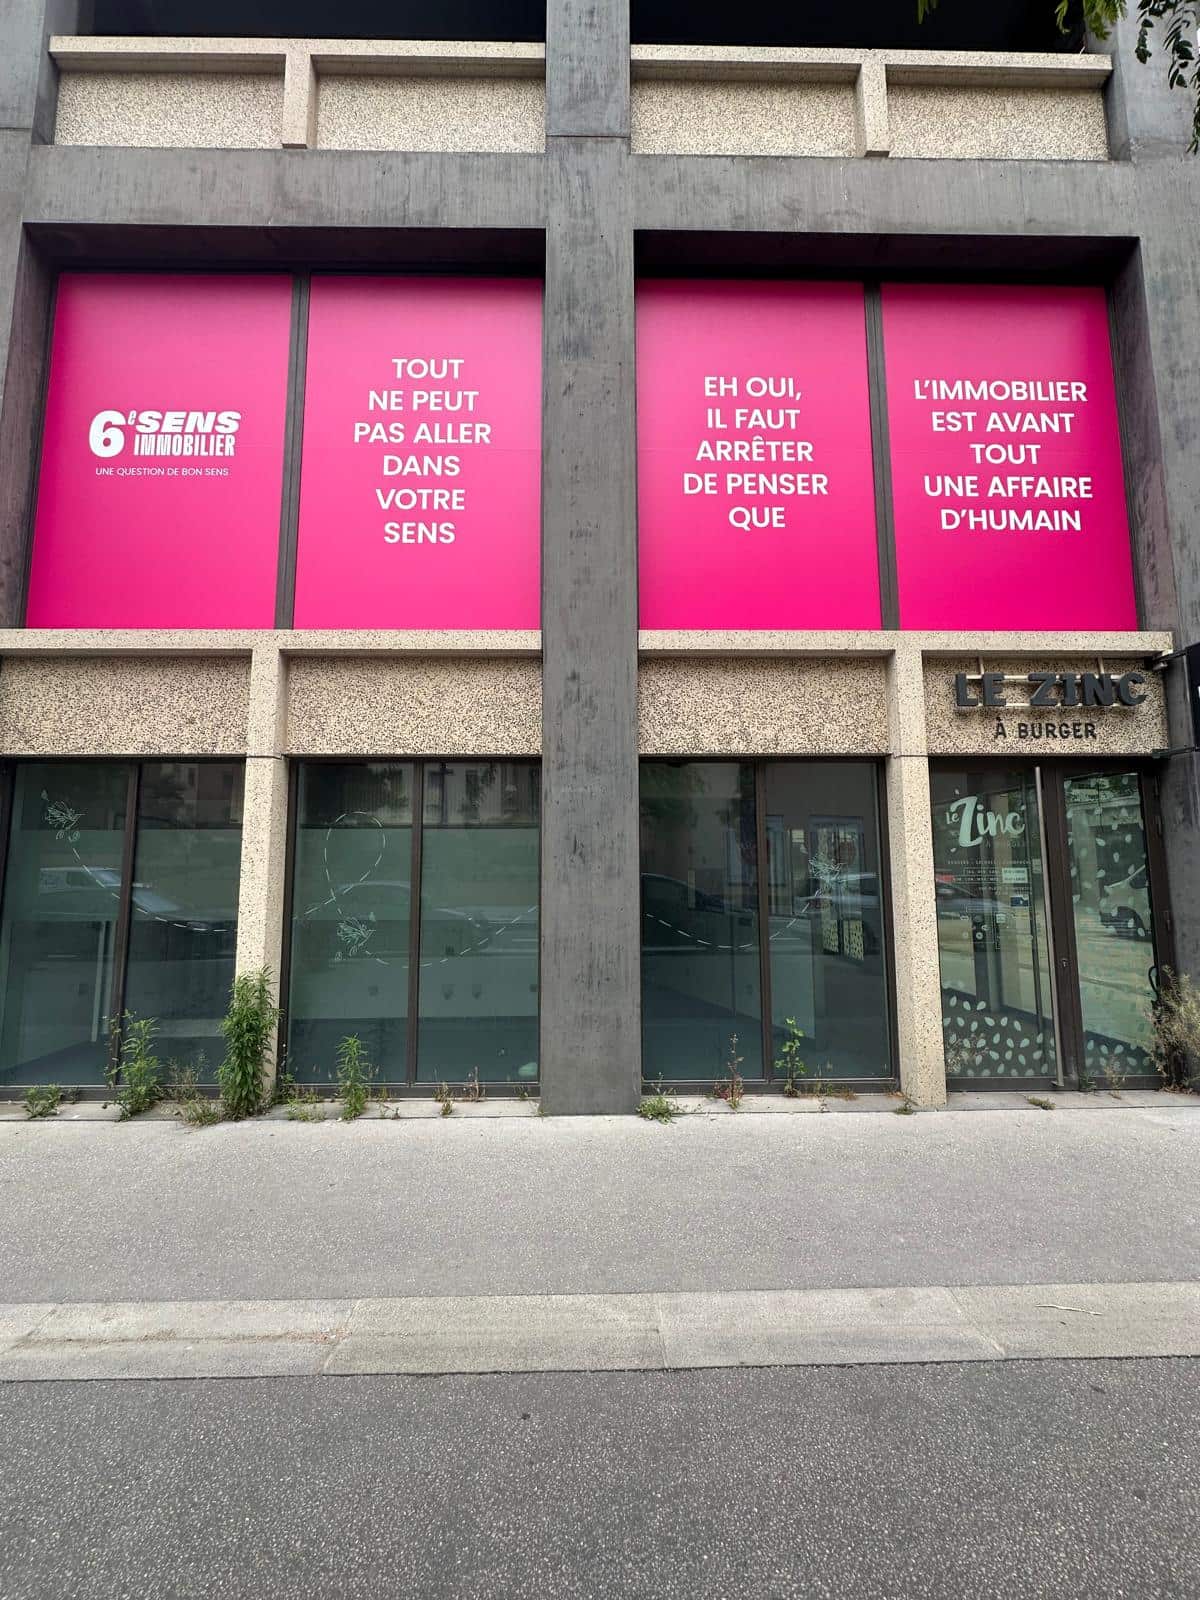 里昂的这家房地产开发商6e sens immobilier展示了一项大胆的双向阅读广告